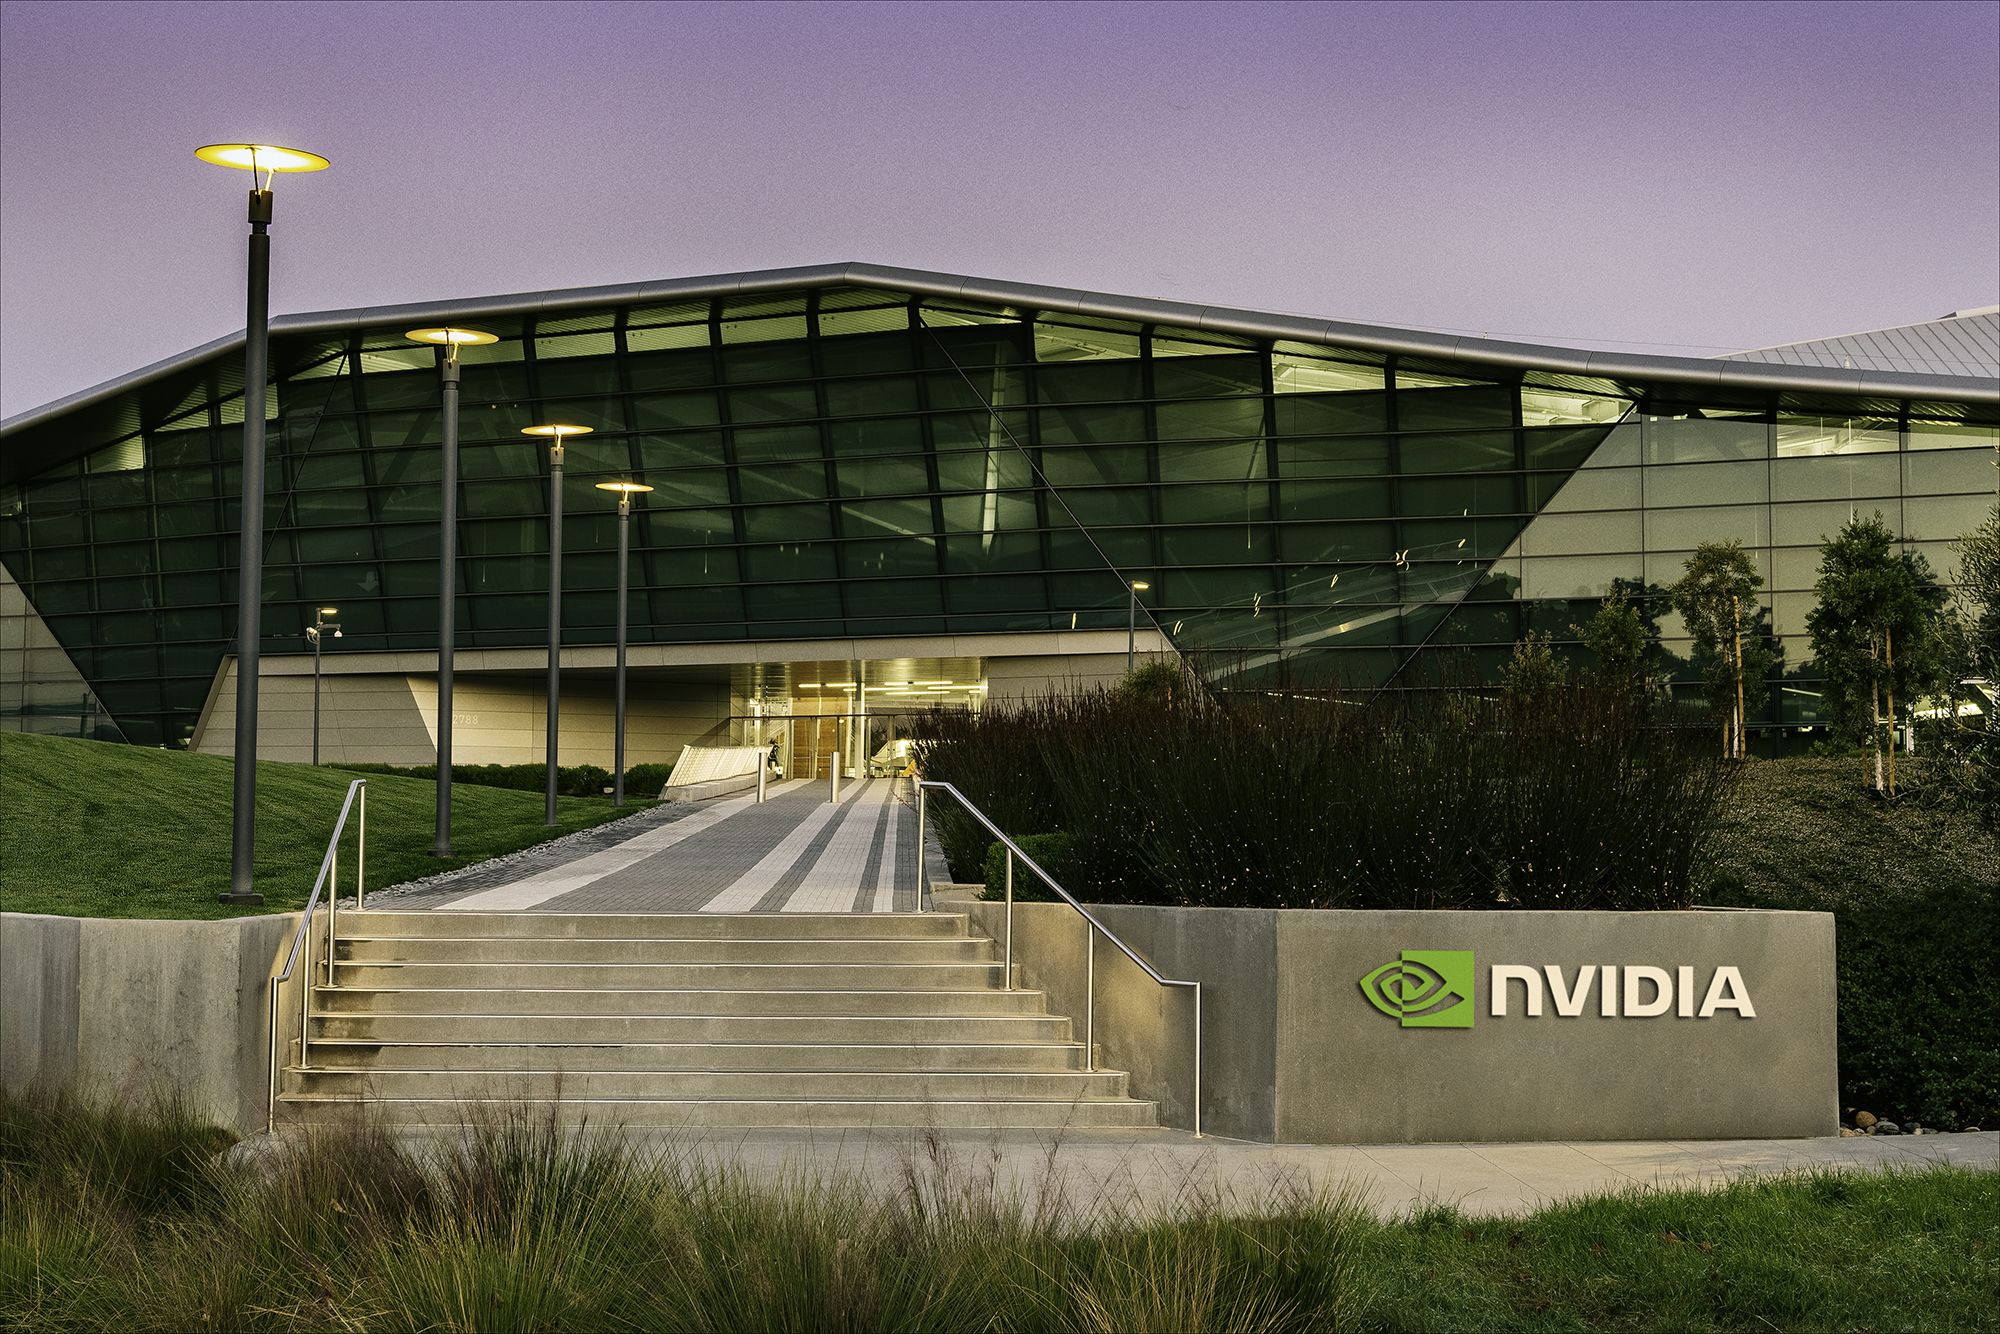 Nvidia Company